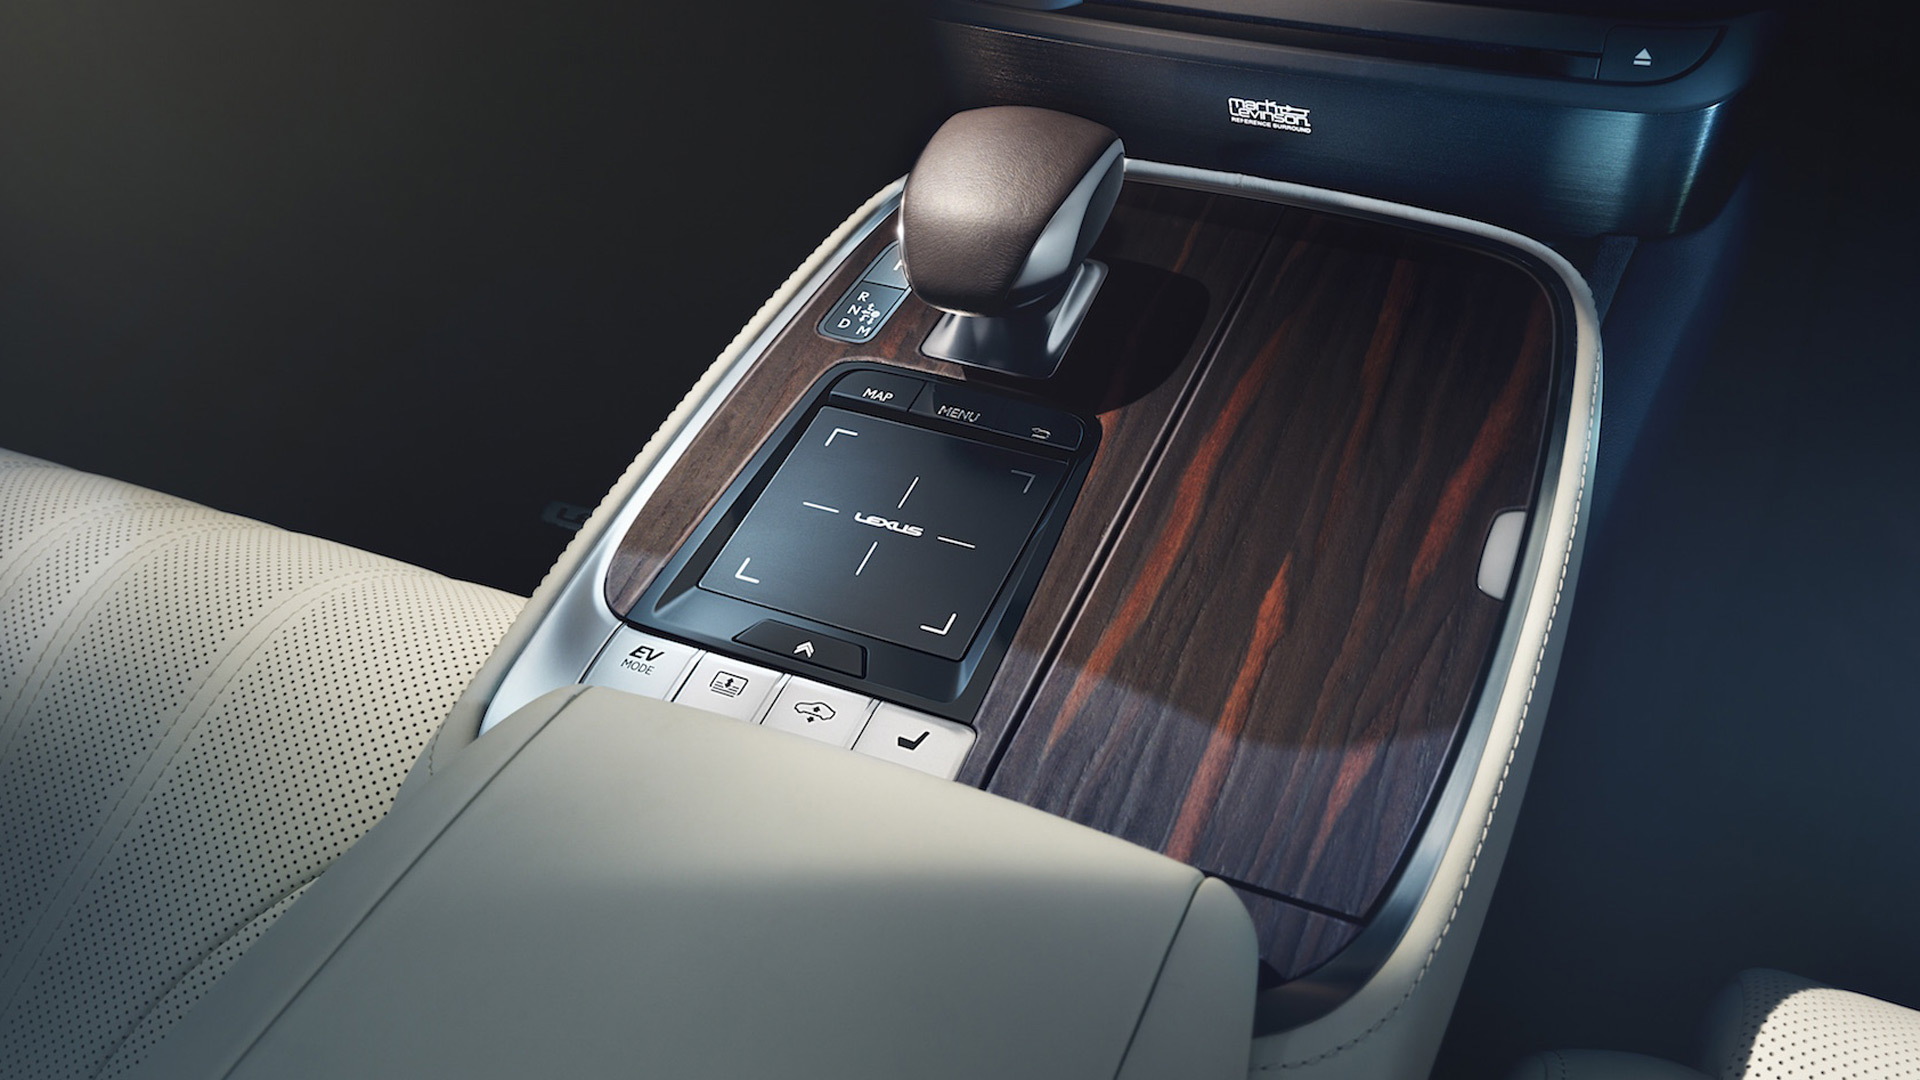 2018 Lexus LS center console with “EV MODE” button